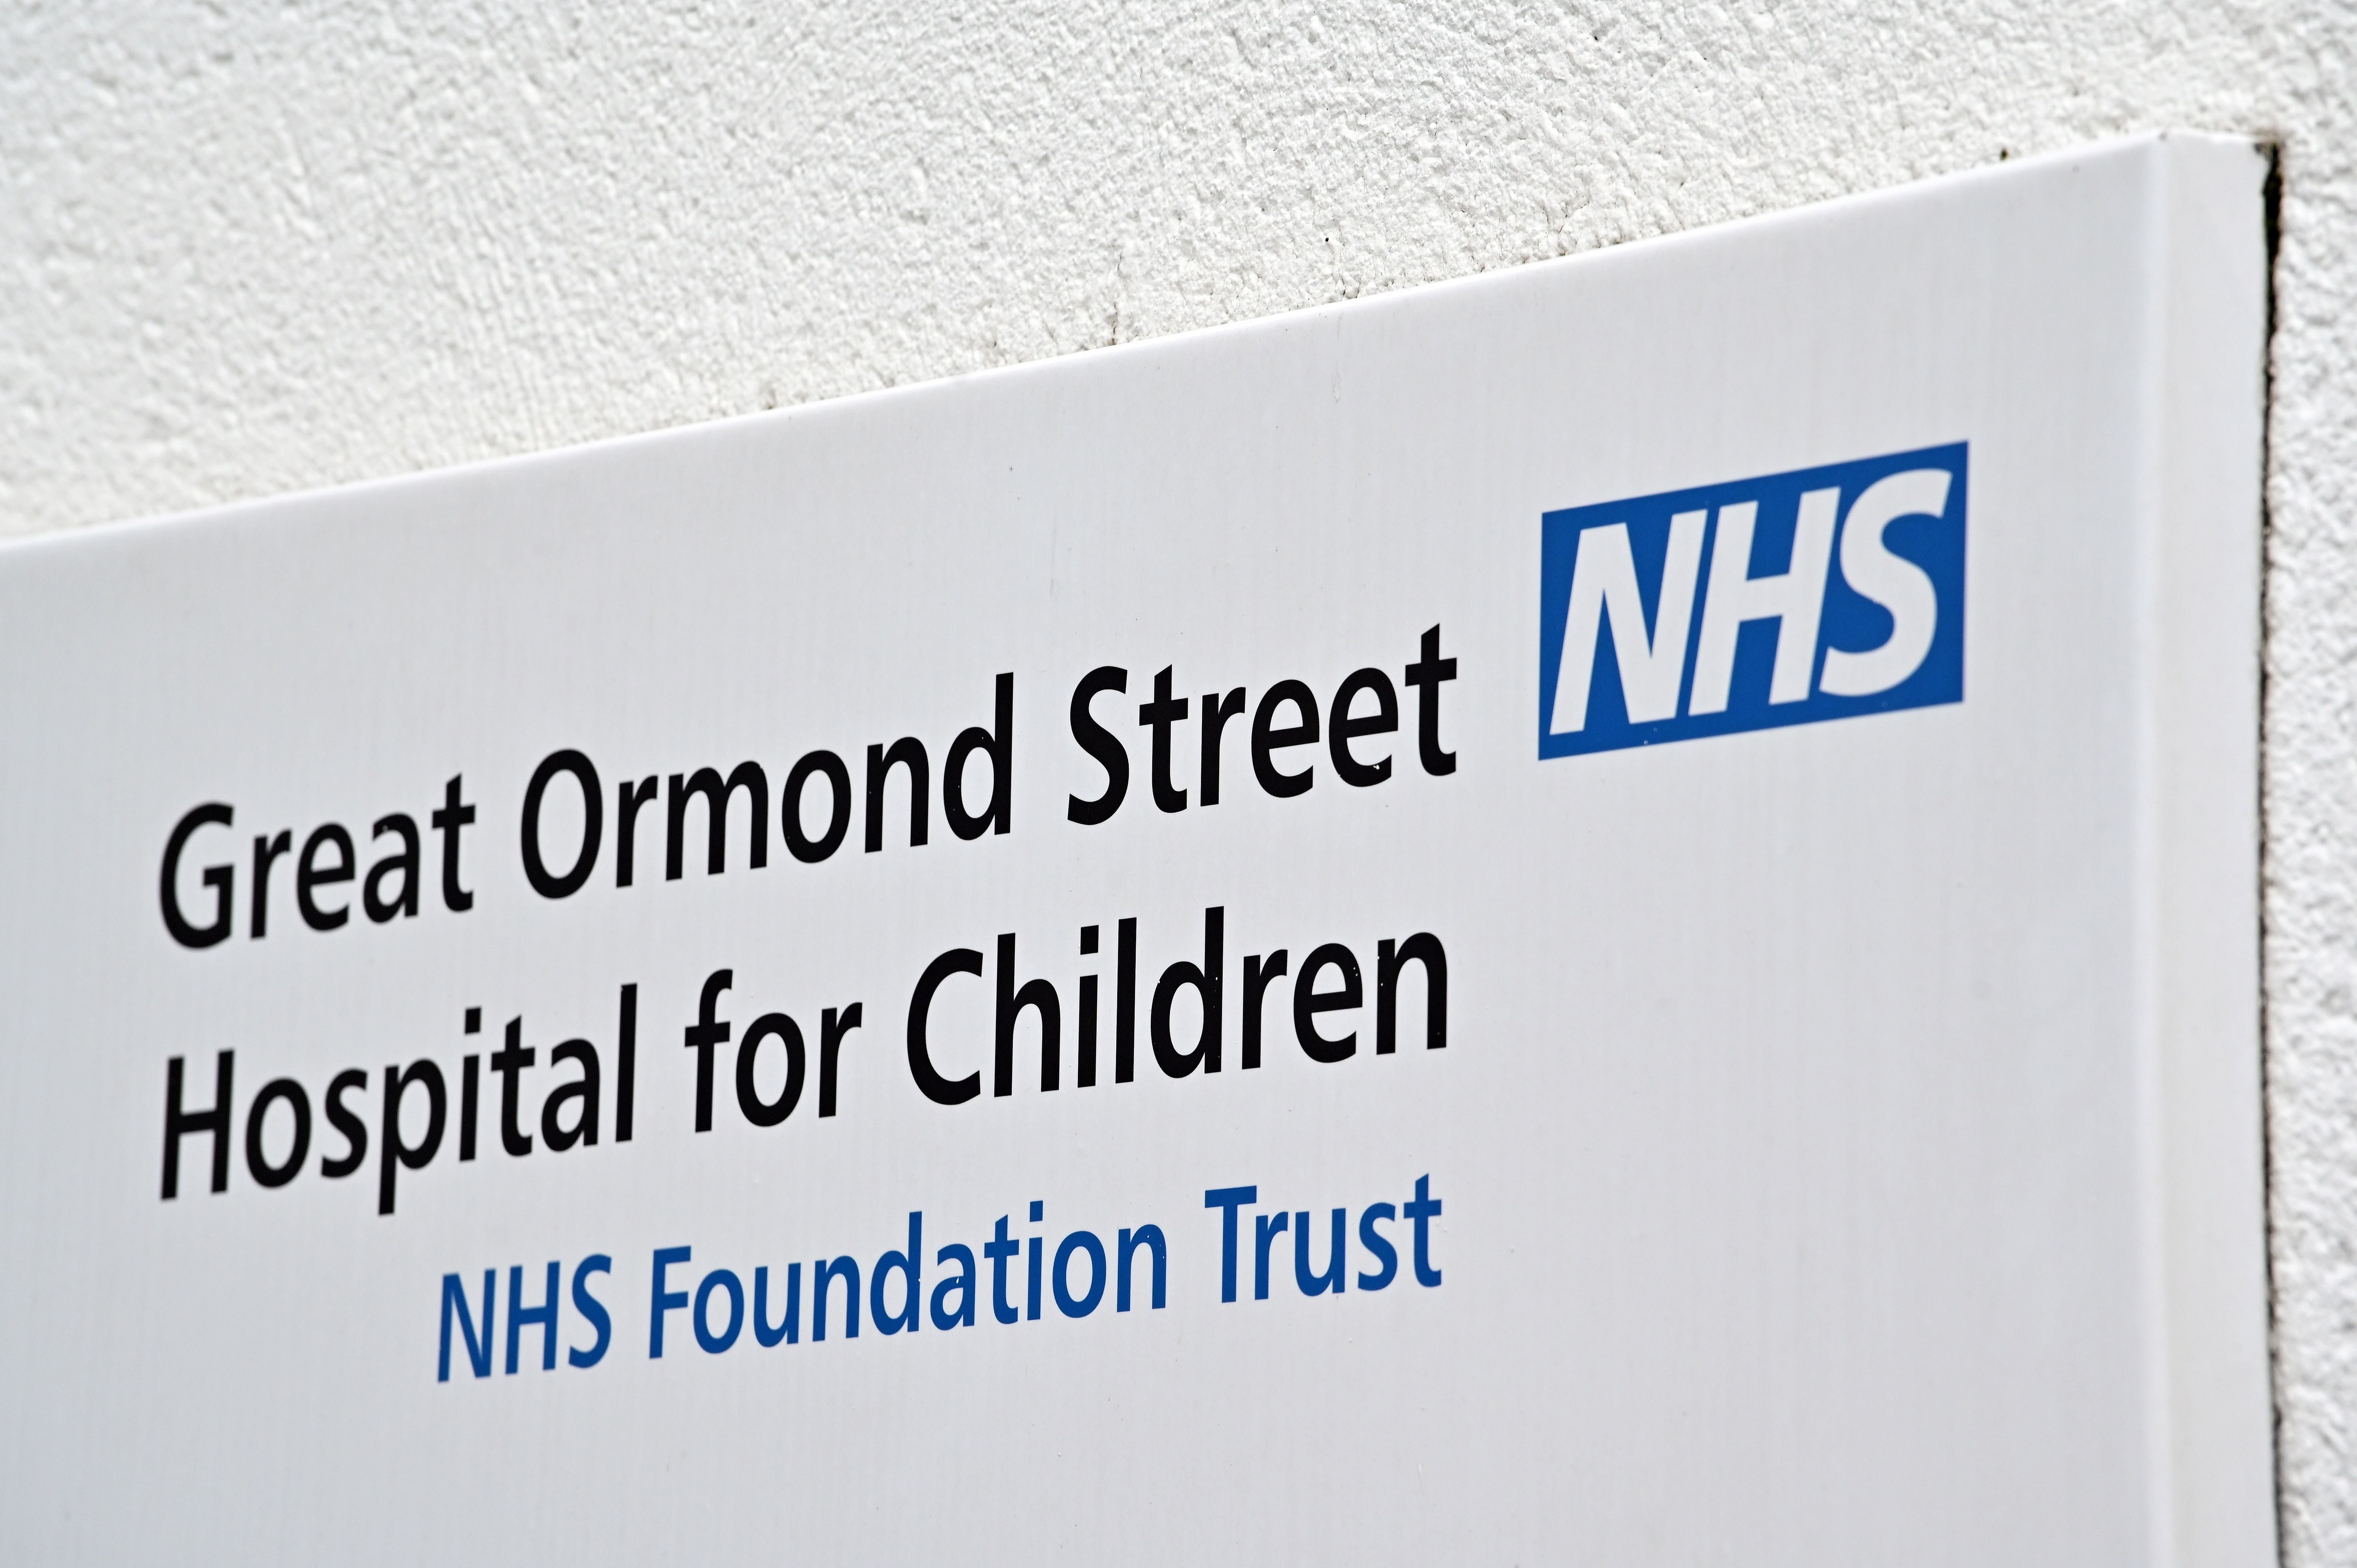 Great Ormond Street Hospital for Children